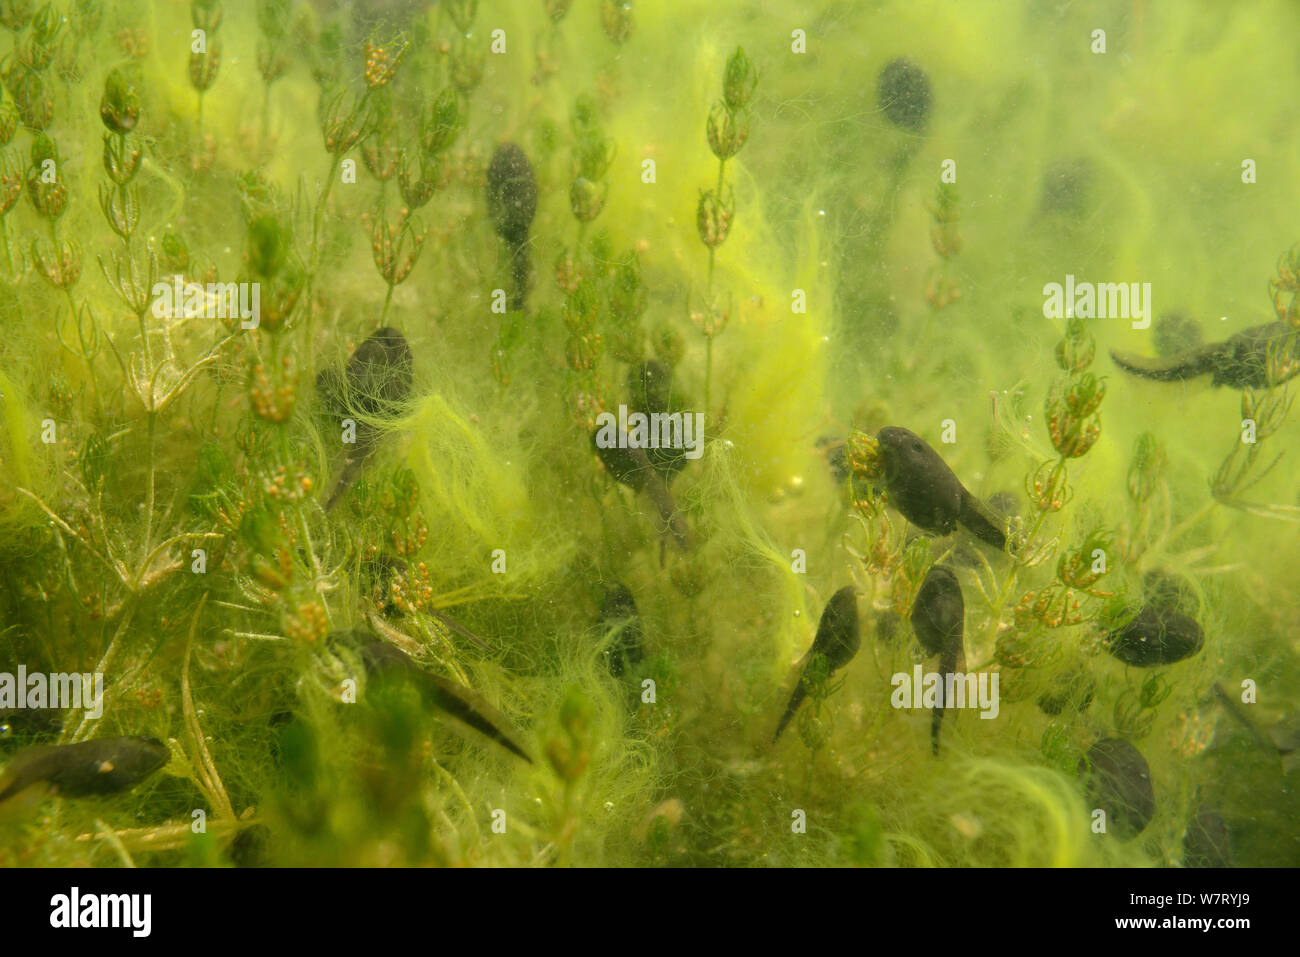 Settimana vecchia Rana comune di girini (Rana temporaria pascolo stonewort delicati (Chara virgata) alghe in un laghetto di acqua dolce, Wiltshire, Regno Unito, Giugno. Foto Stock